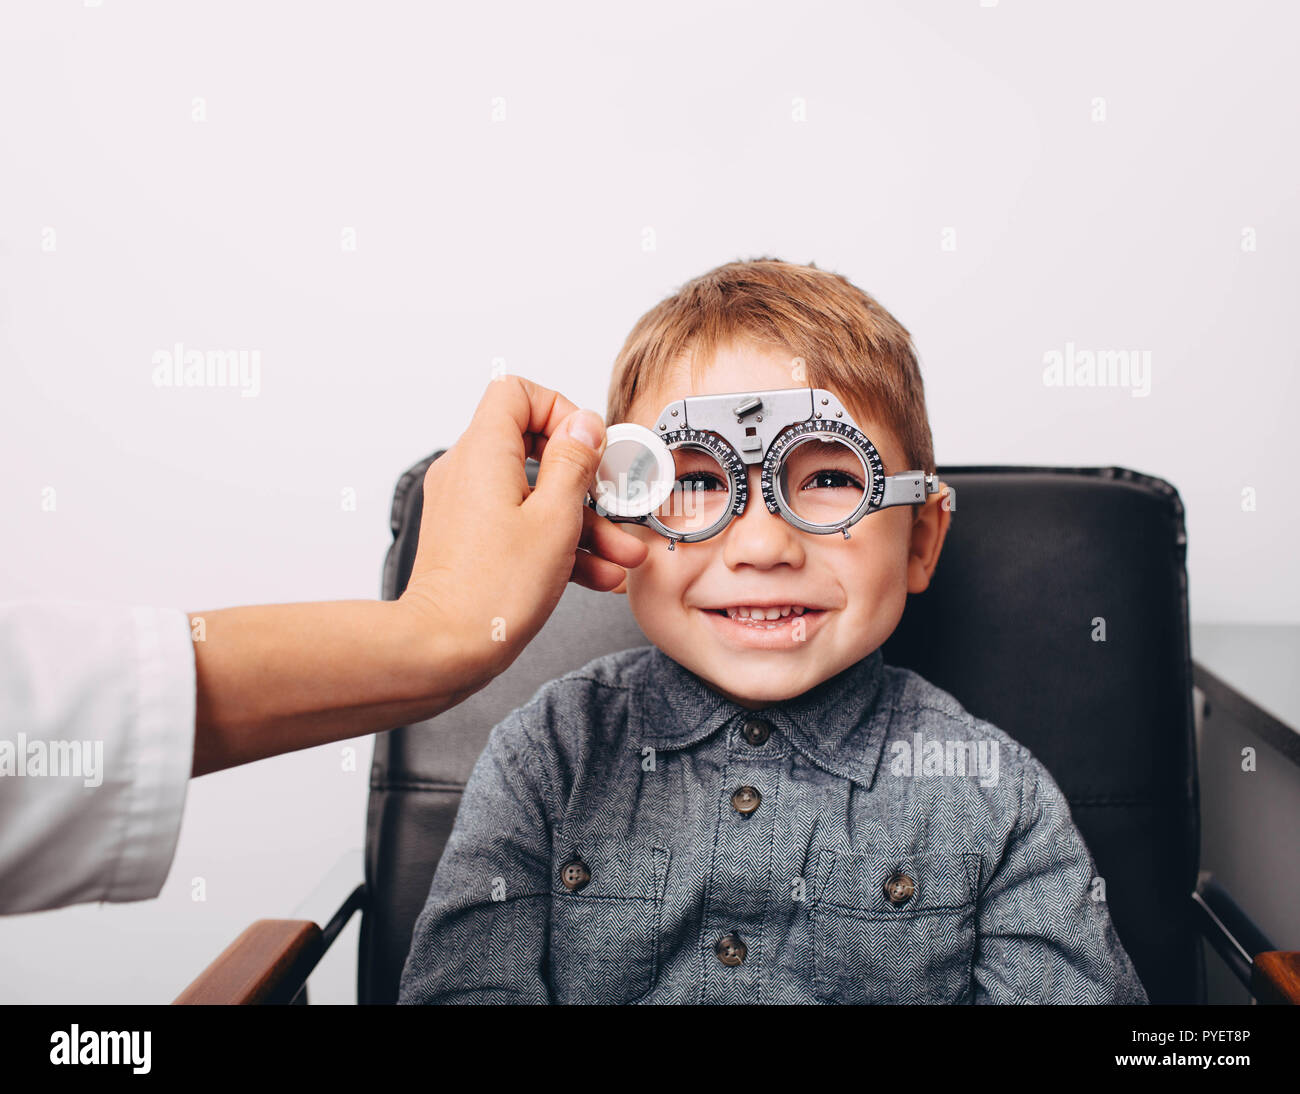 Optiker prüfen Vision von einem wenig freundlichen jungen mit Trial Rahmen Stockfoto